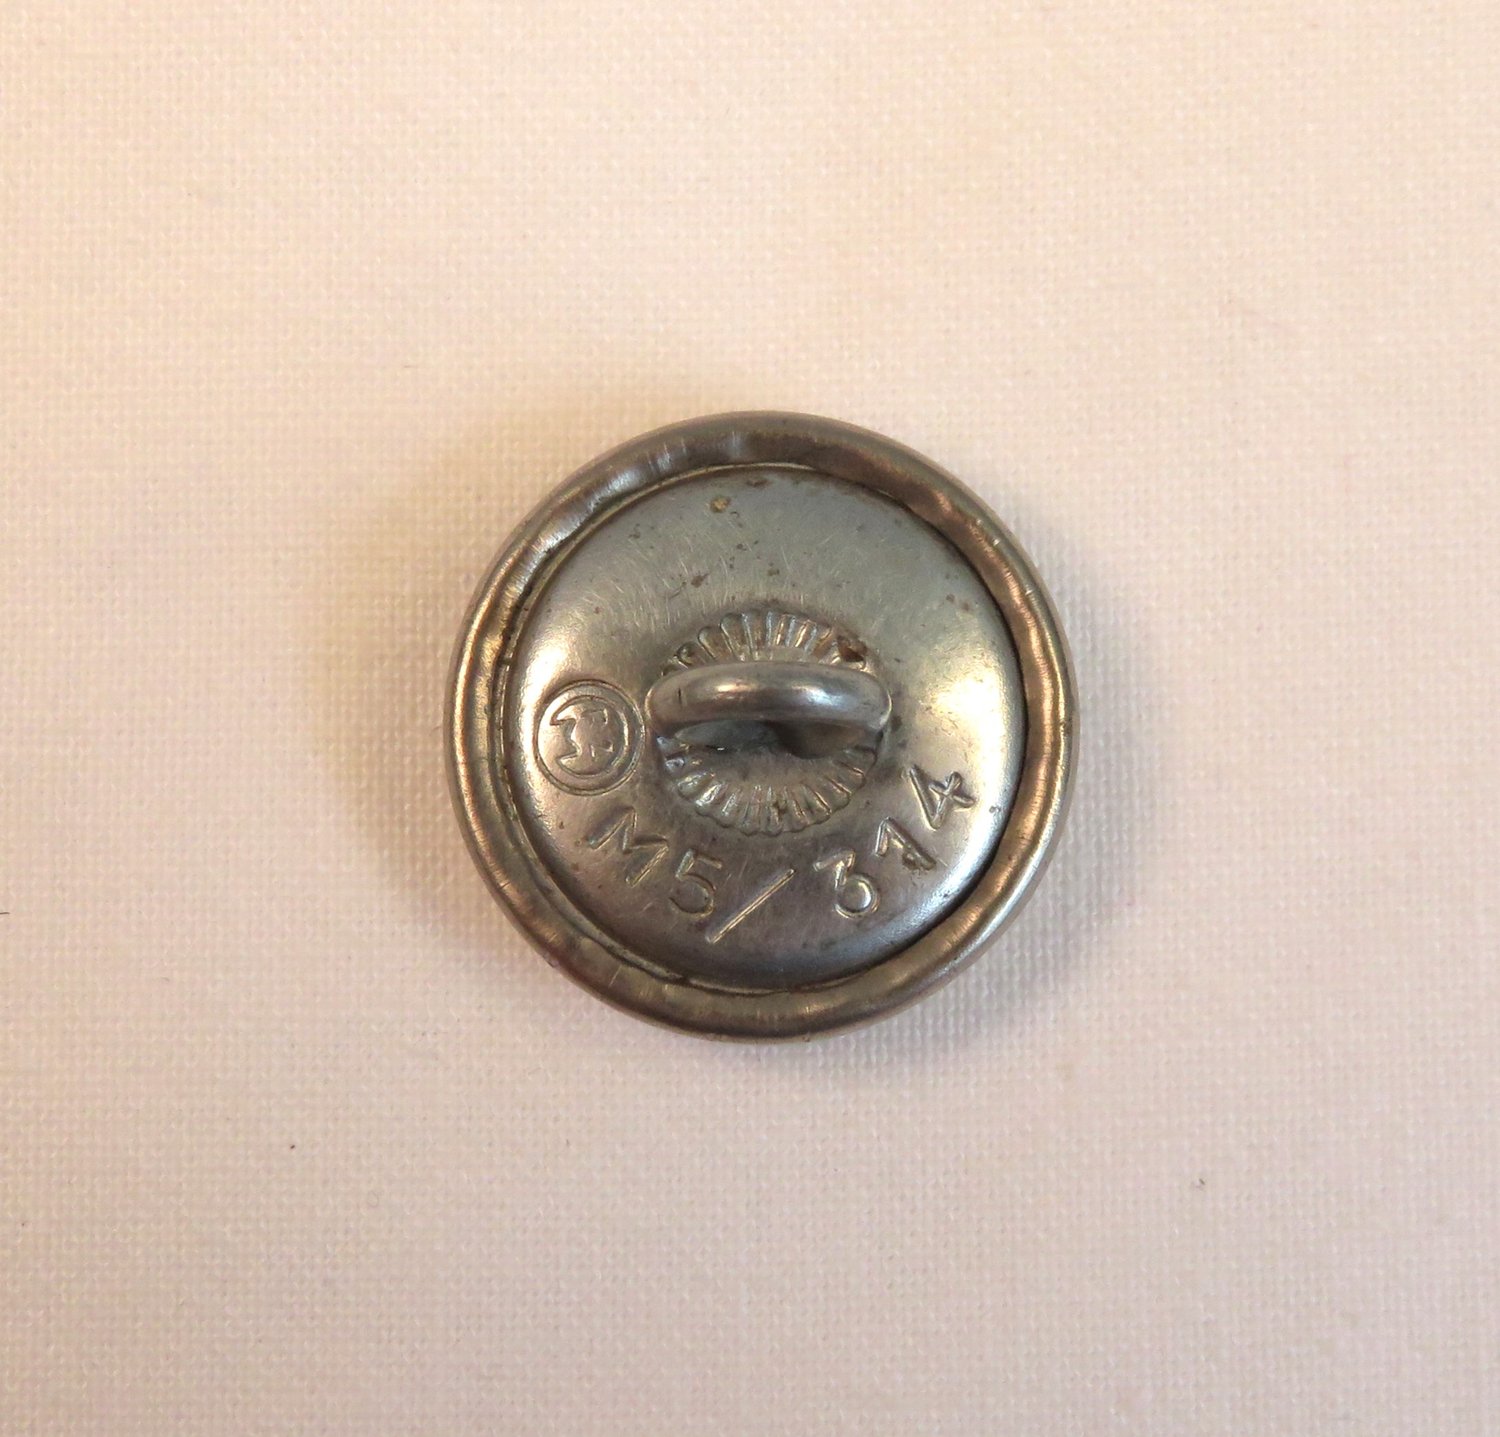 Original 21mm Silver Buttons for Wehrmacht Uniform, Manufacturer Assmann  - Original Militaria